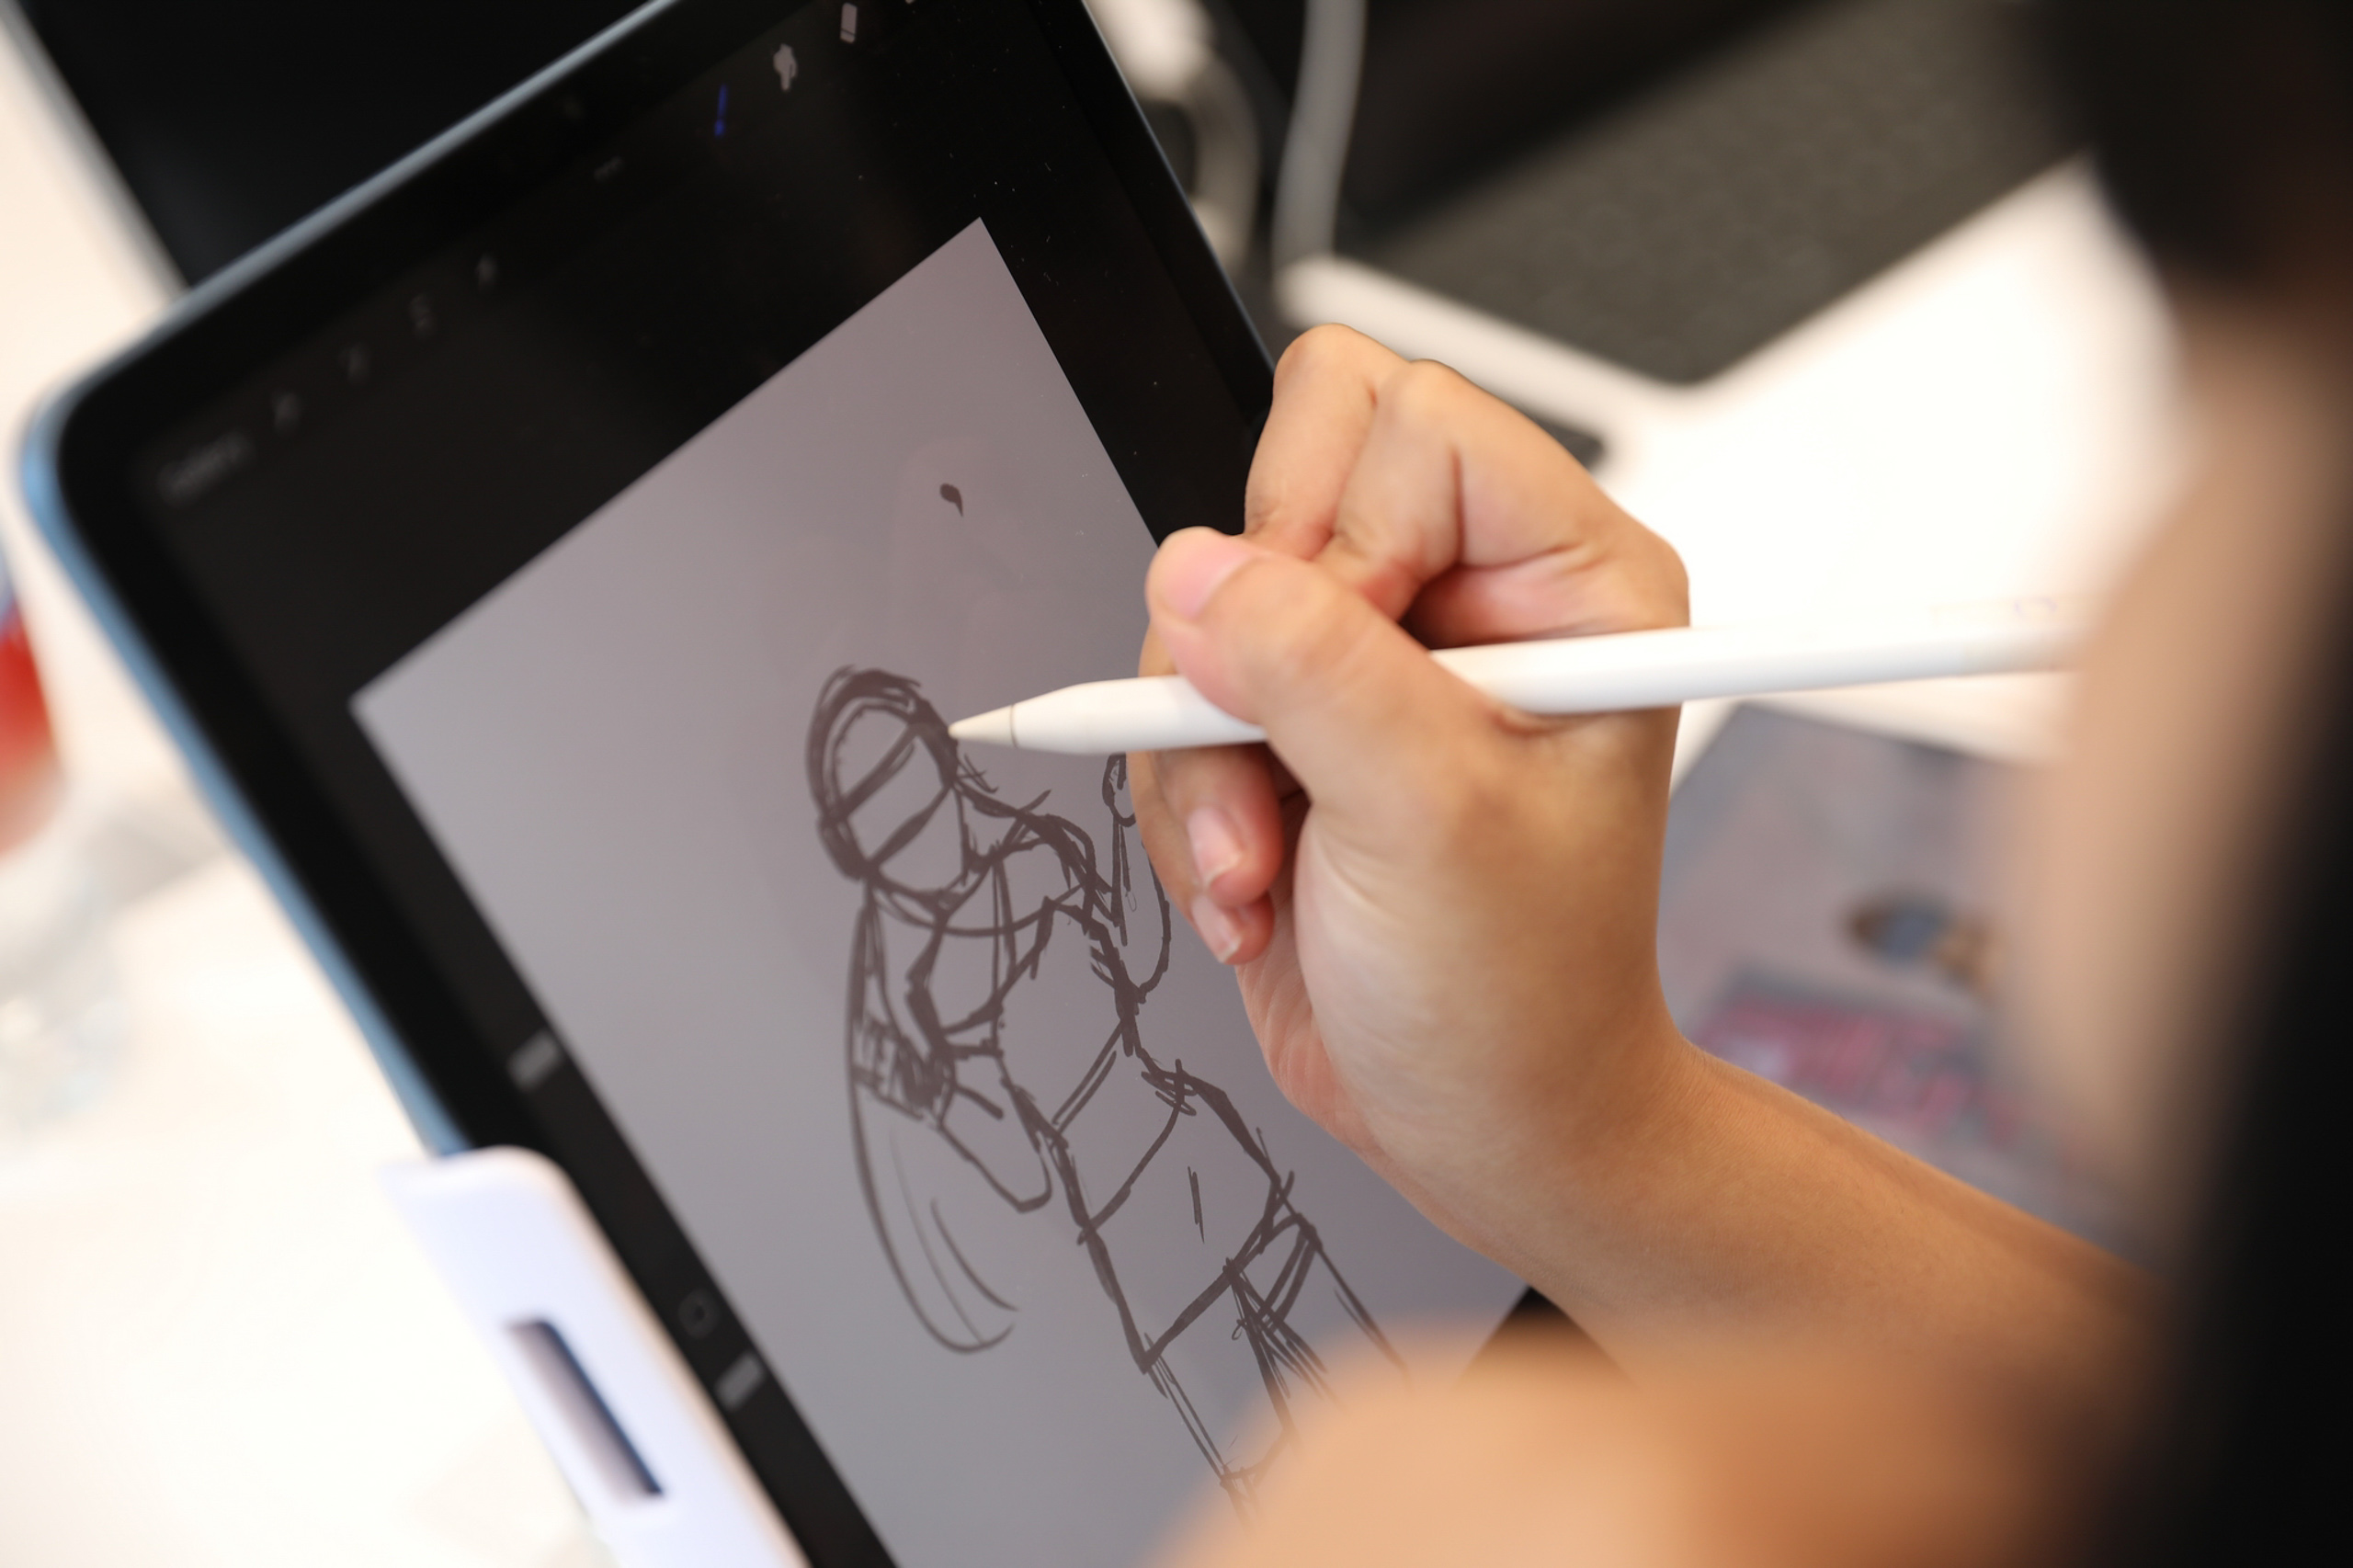 F.Studio organizes cuộc thi vẽ tranh trên iPad để trao giải thưởng hấp dẫn cho những tác giả xuất sắc. Không chỉ đơn giản là vẽ tranh, cuộc thi còn là cơ hội để các tài năng trẻ được khám phá, phát triển và gửi thông điệp của riêng mình đến với thế giới. Hãy cùng tham gia và trở thành một trong những người chiến thắng!